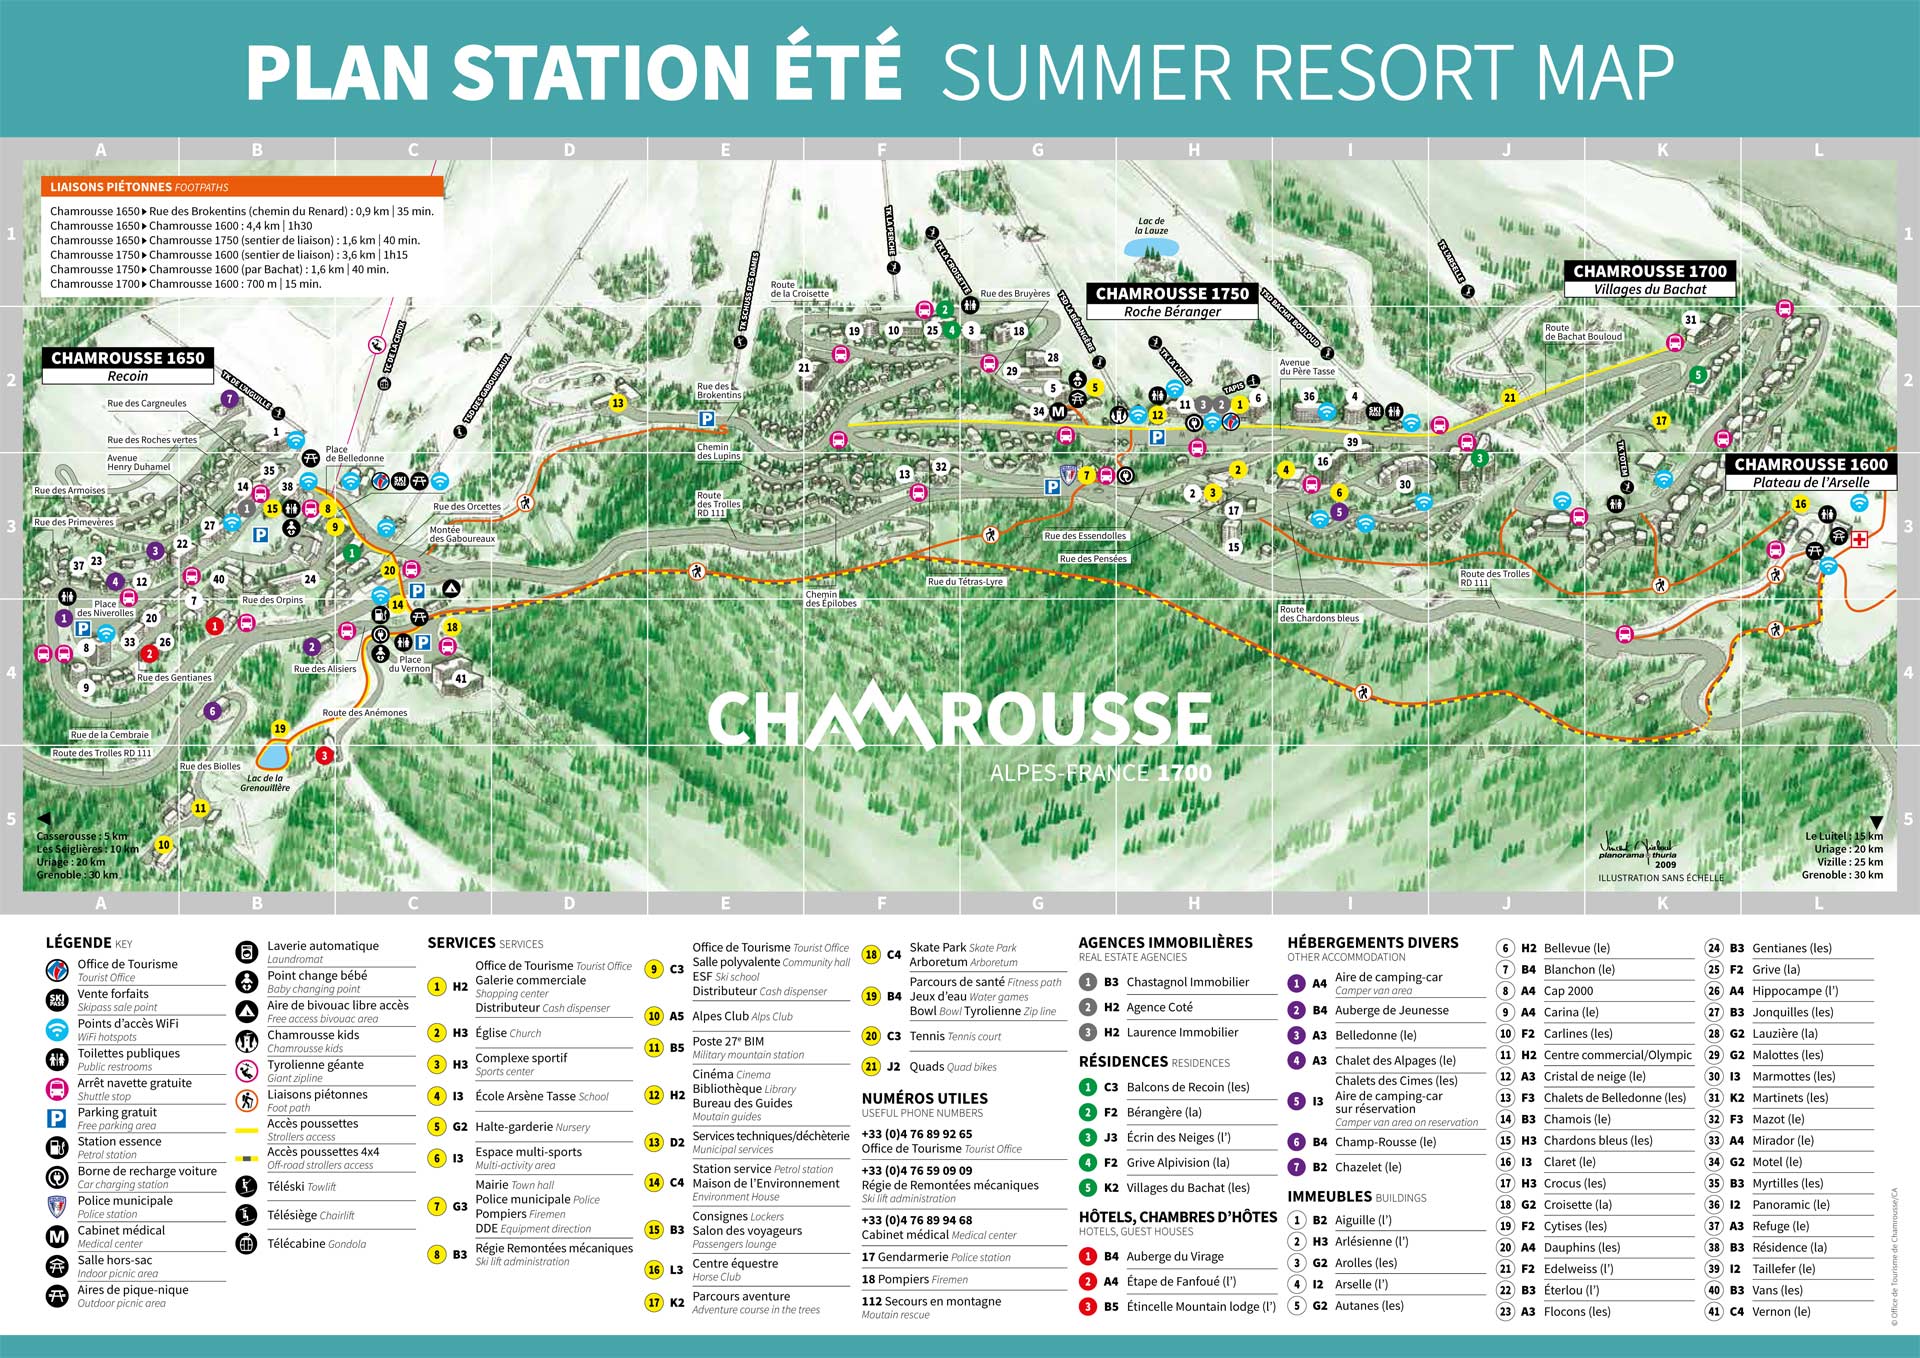 Chamrousse resort map summer mountain resort grenoble belledonne isere lyon rhone french alps france - © CA - OT Chamrousse / Kaliblue